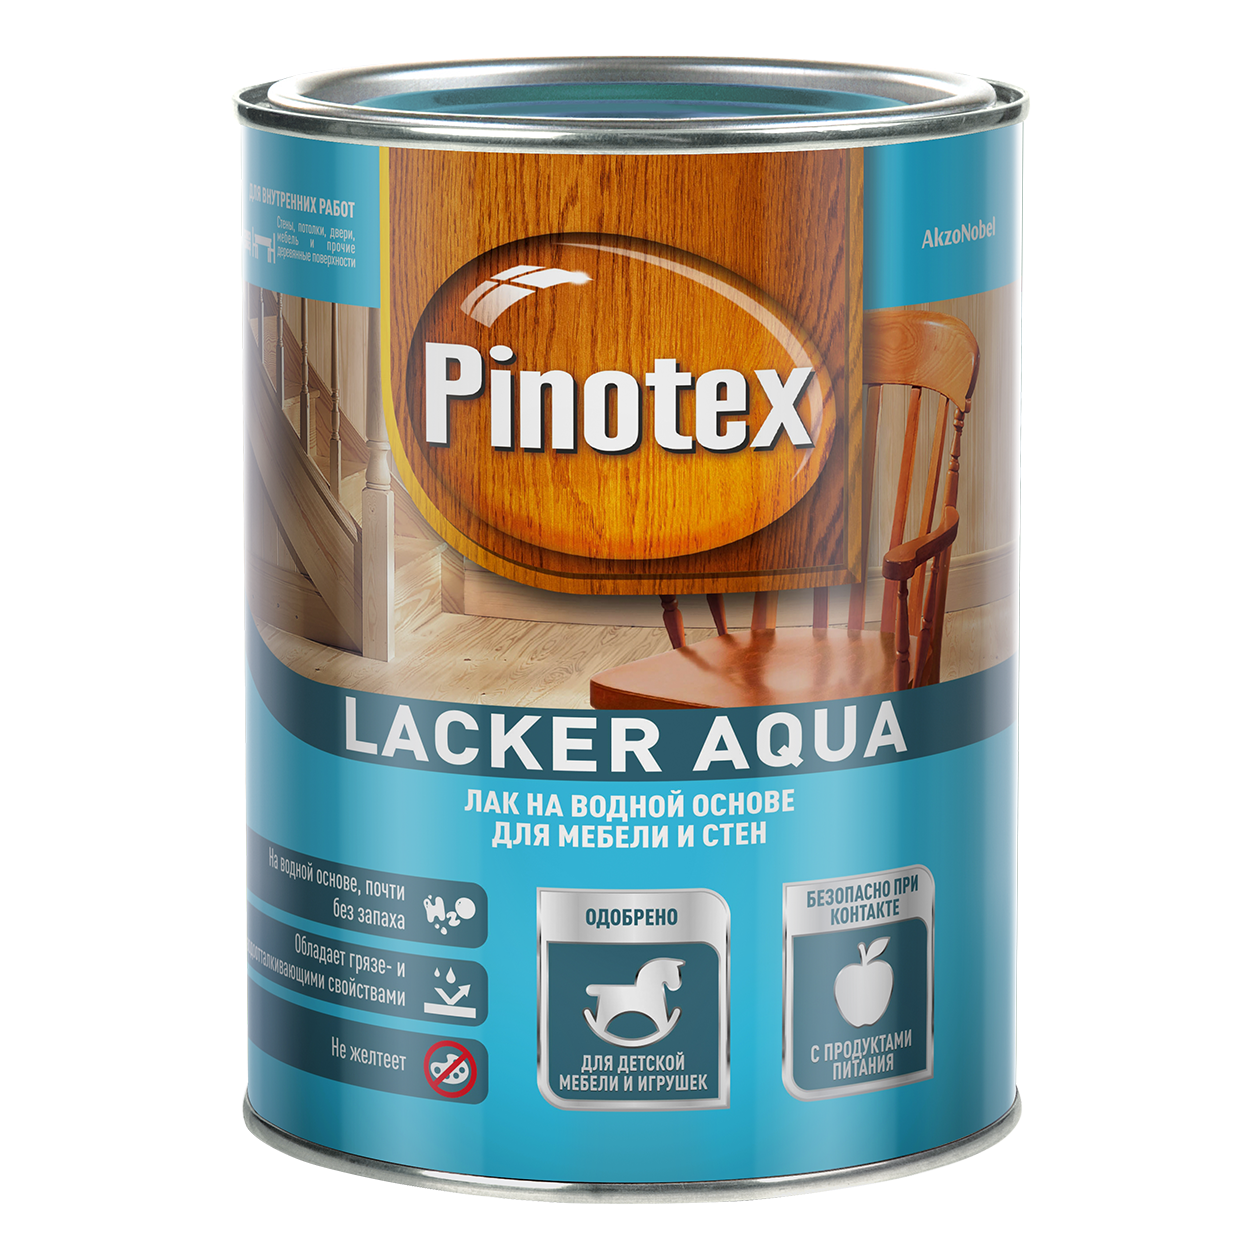 Колеруемый лак Pinotex Lacker Aqua 70 (2,7л) глянц.